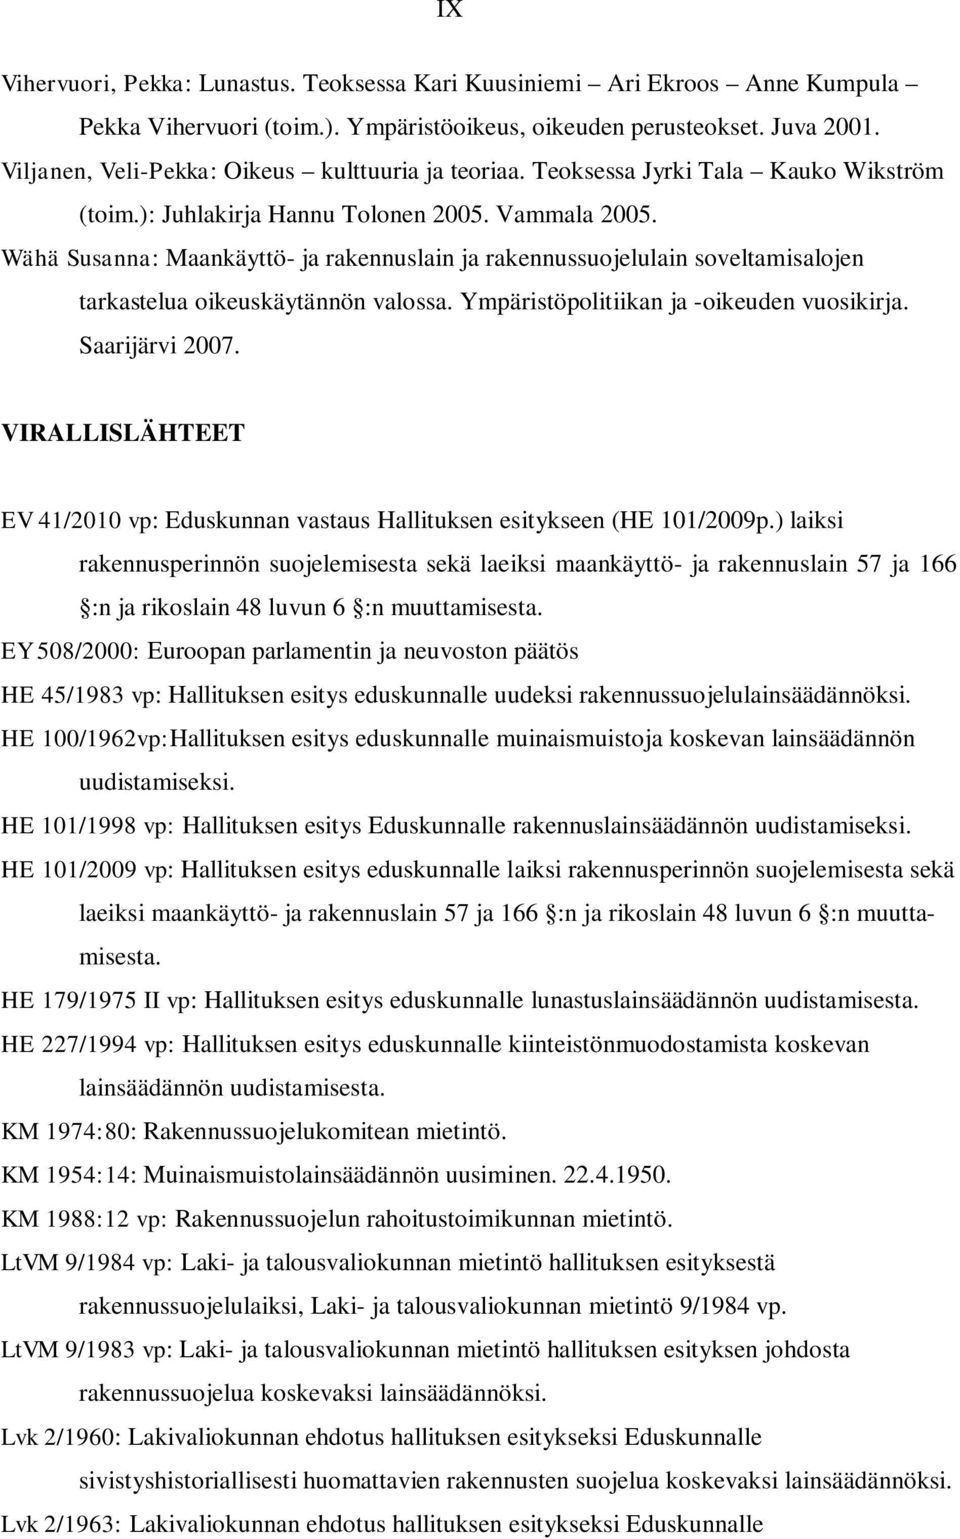 Wähä Susanna: Maankäyttö- ja rakennuslain ja rakennussuojelulain soveltamisalojen tarkastelua oikeuskäytännön valossa. Ympäristöpolitiikan ja -oikeuden vuosikirja. Saarijärvi 2007.